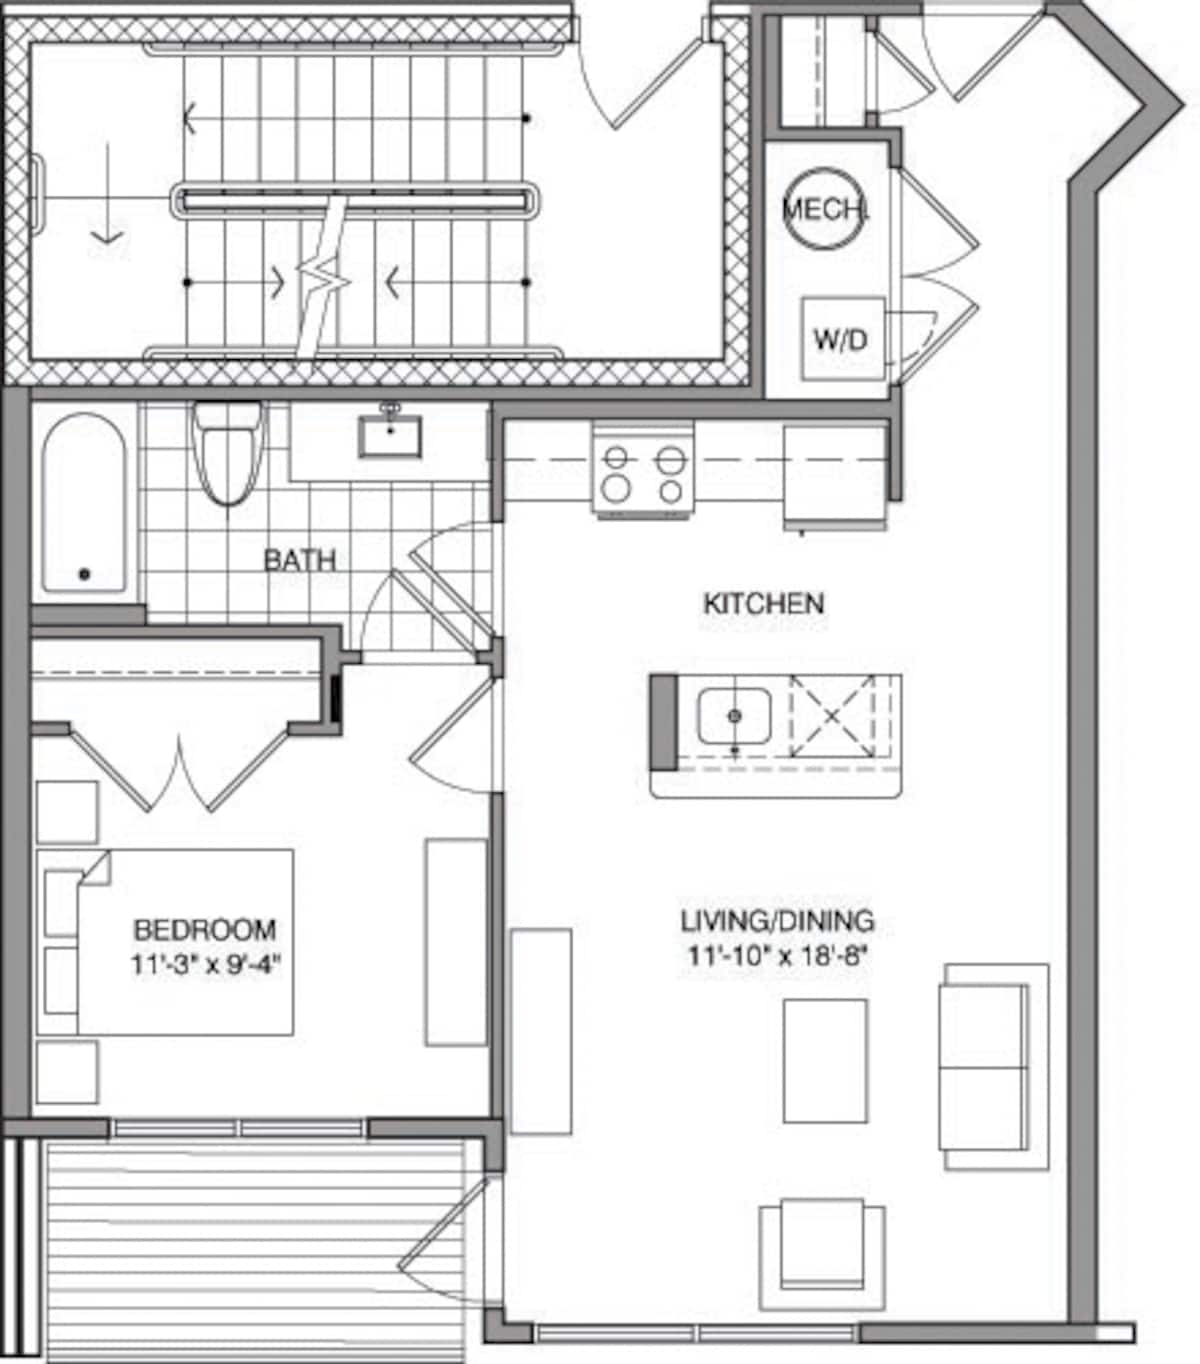 Floorplan diagram for 1 Bdrm A, showing 1 bedroom